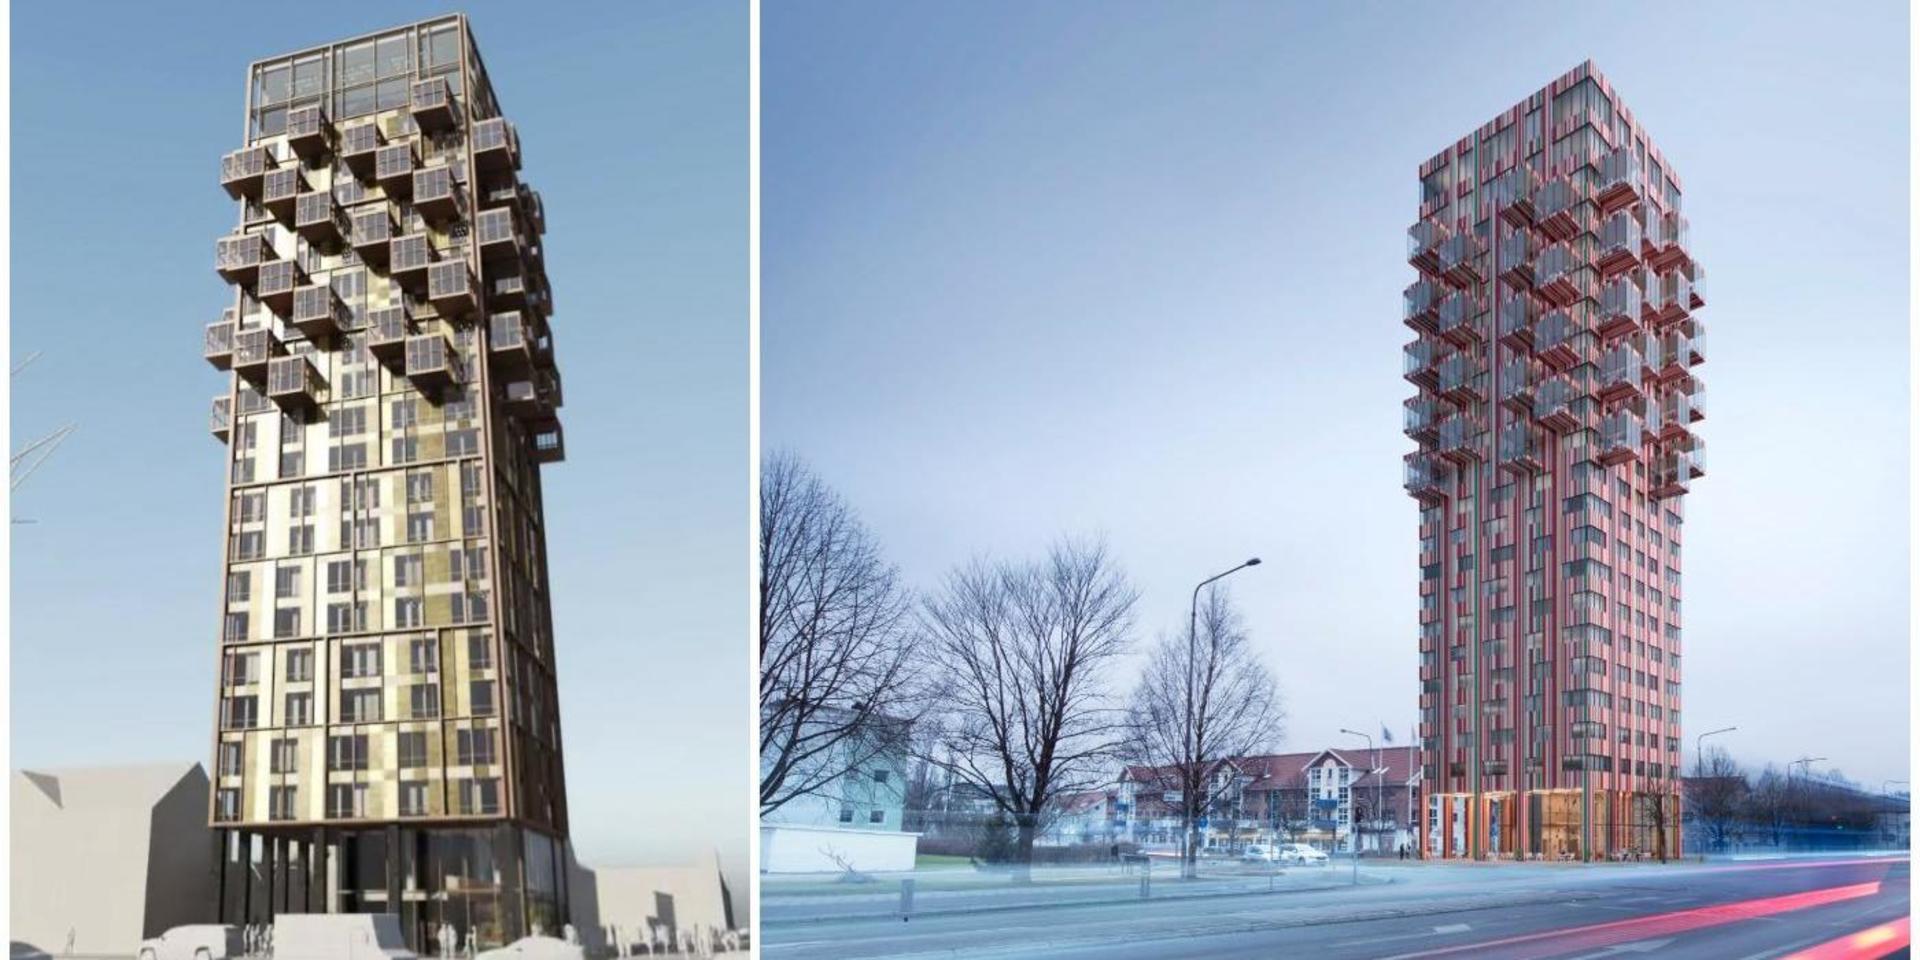 Det nya förslaget framtaget av QPG arkitektur / TMRW, ersätter det gamla randiga av Wingårdh arkitektkontor. 